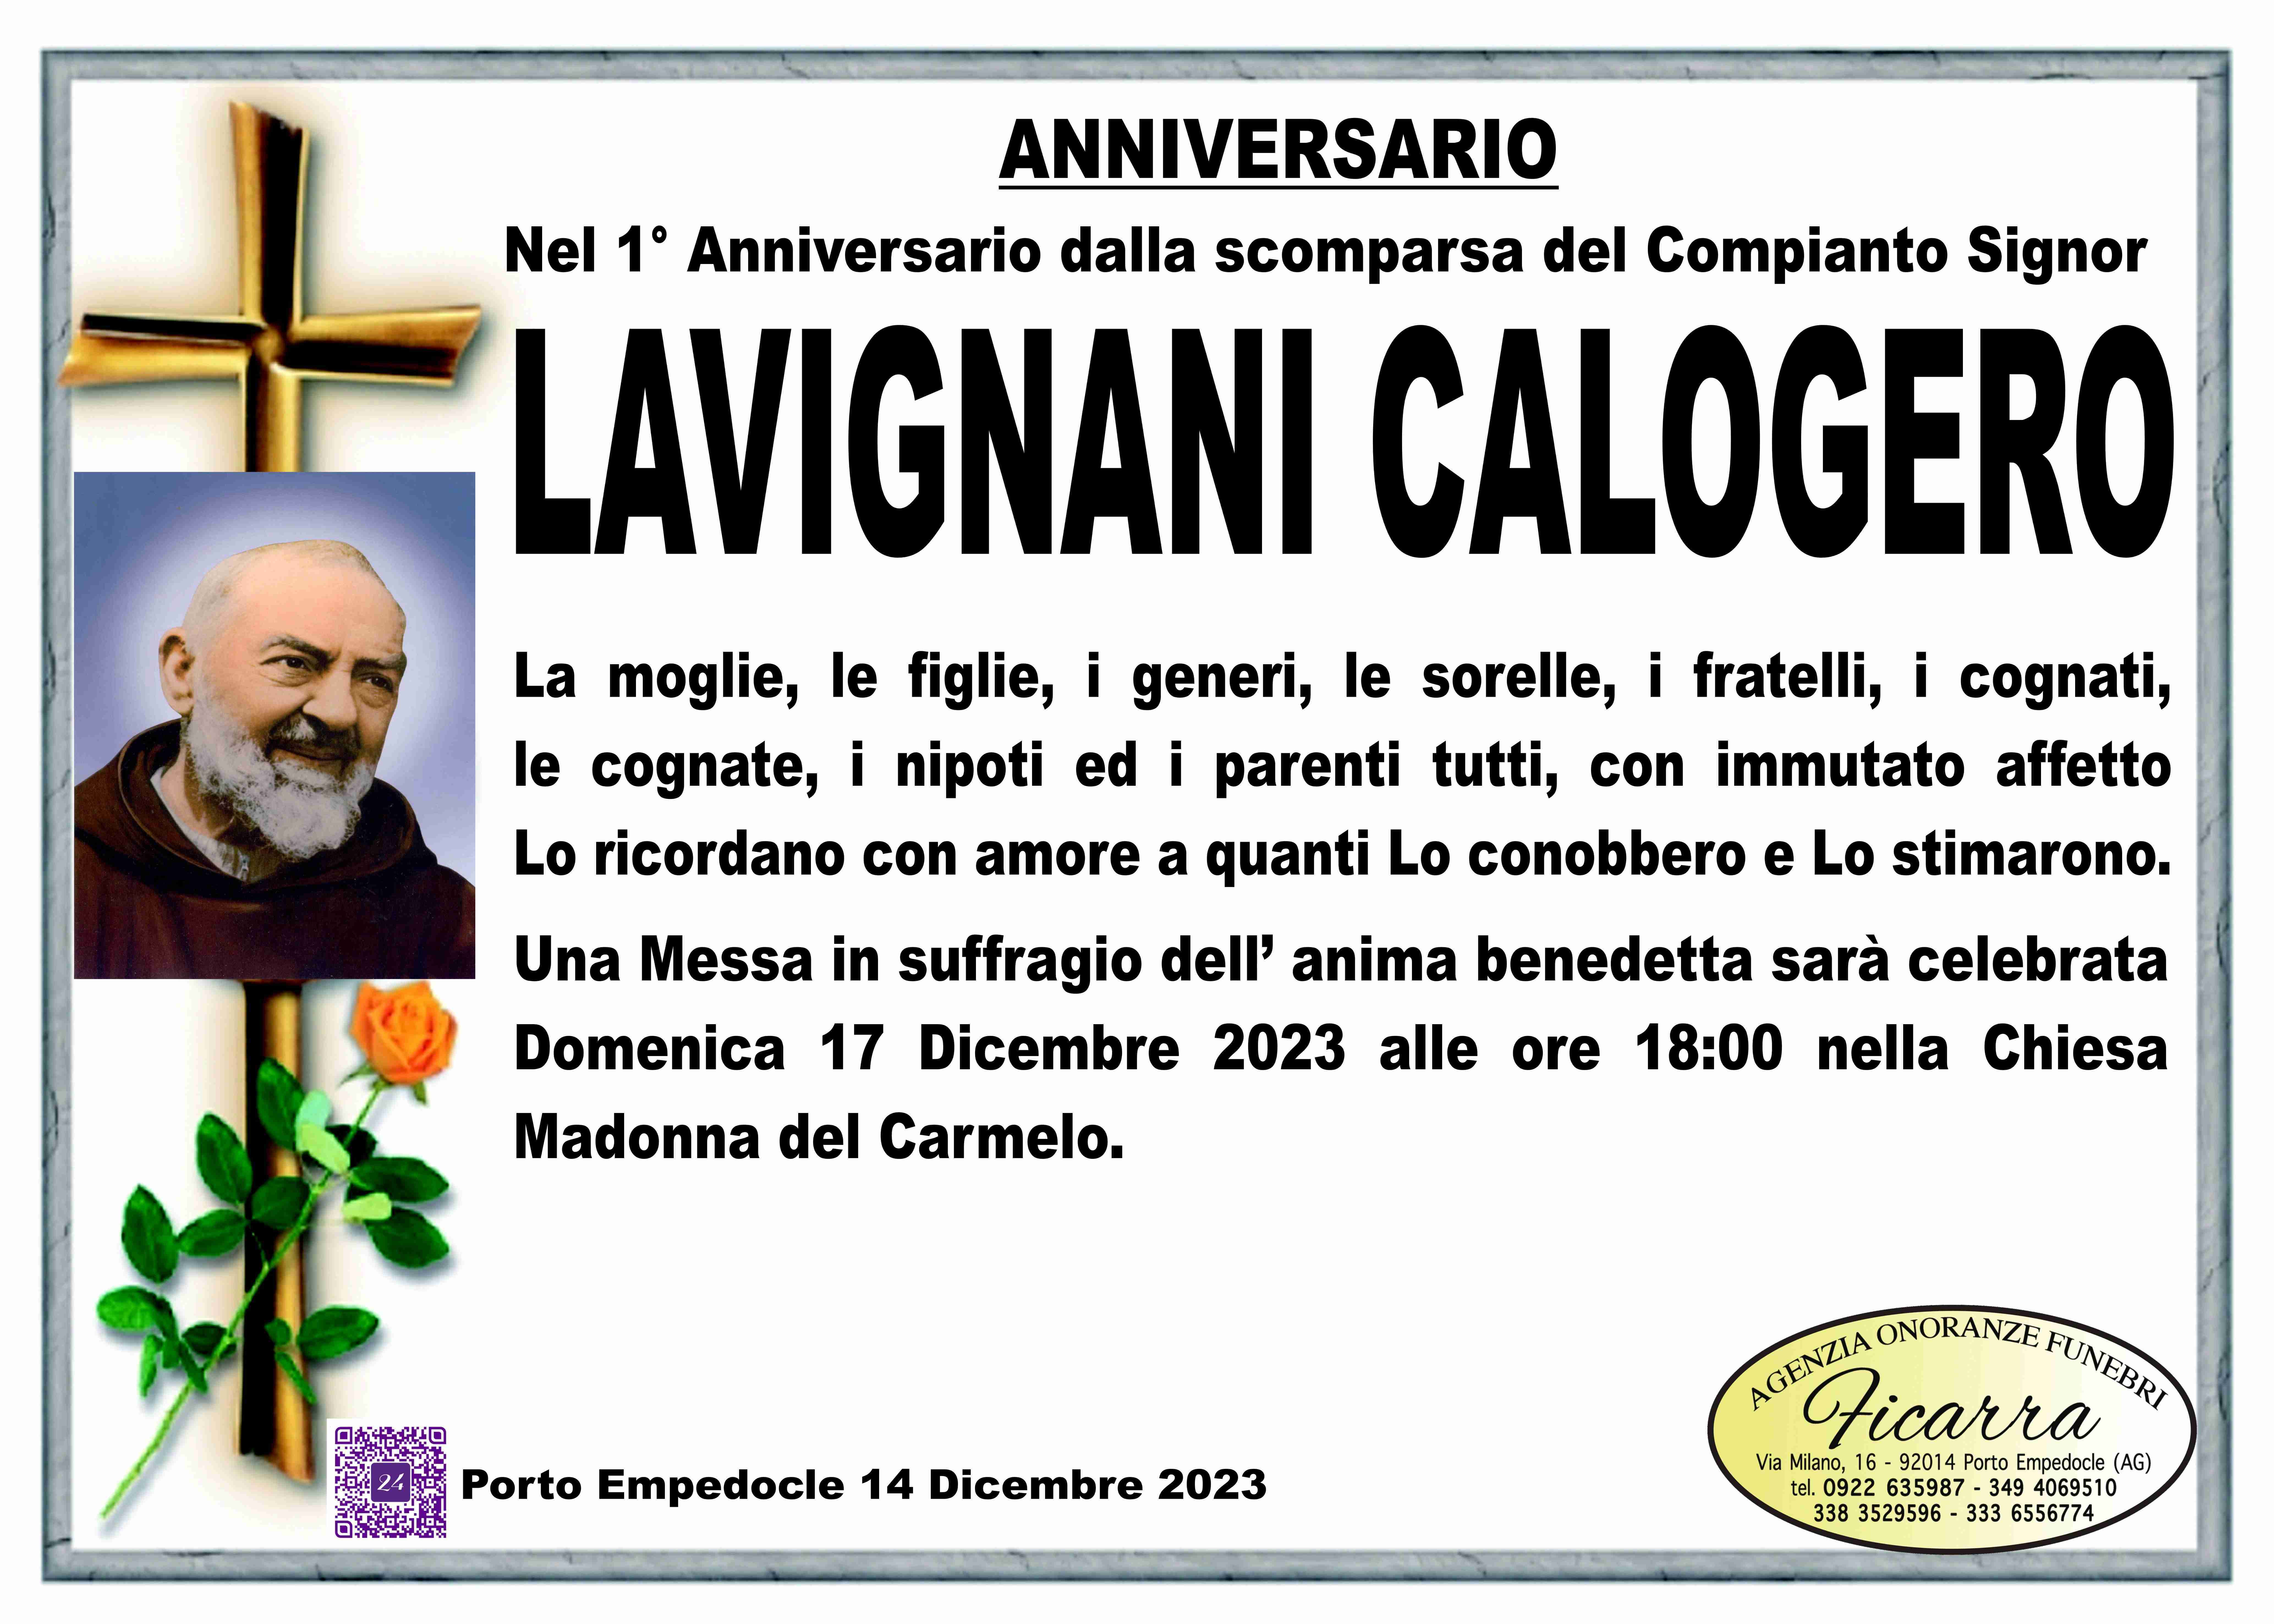 Calogero Lavignani